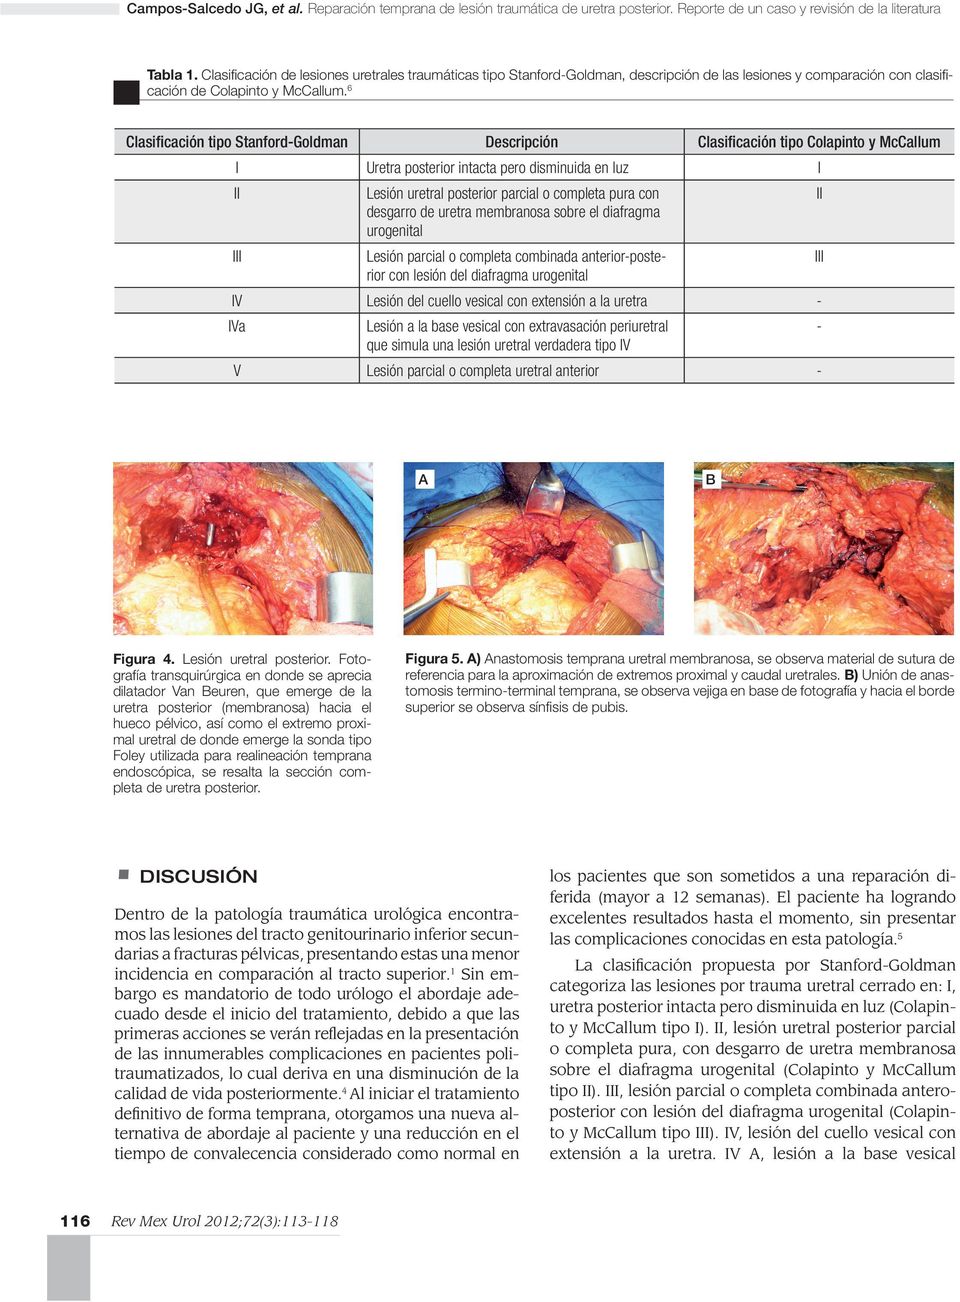 Clasificación de lesiones uretrales traumáticas tipo Stanford-Goldman, descripción de las lesiones y comparación con clasificación de Colapinto y McCallum.